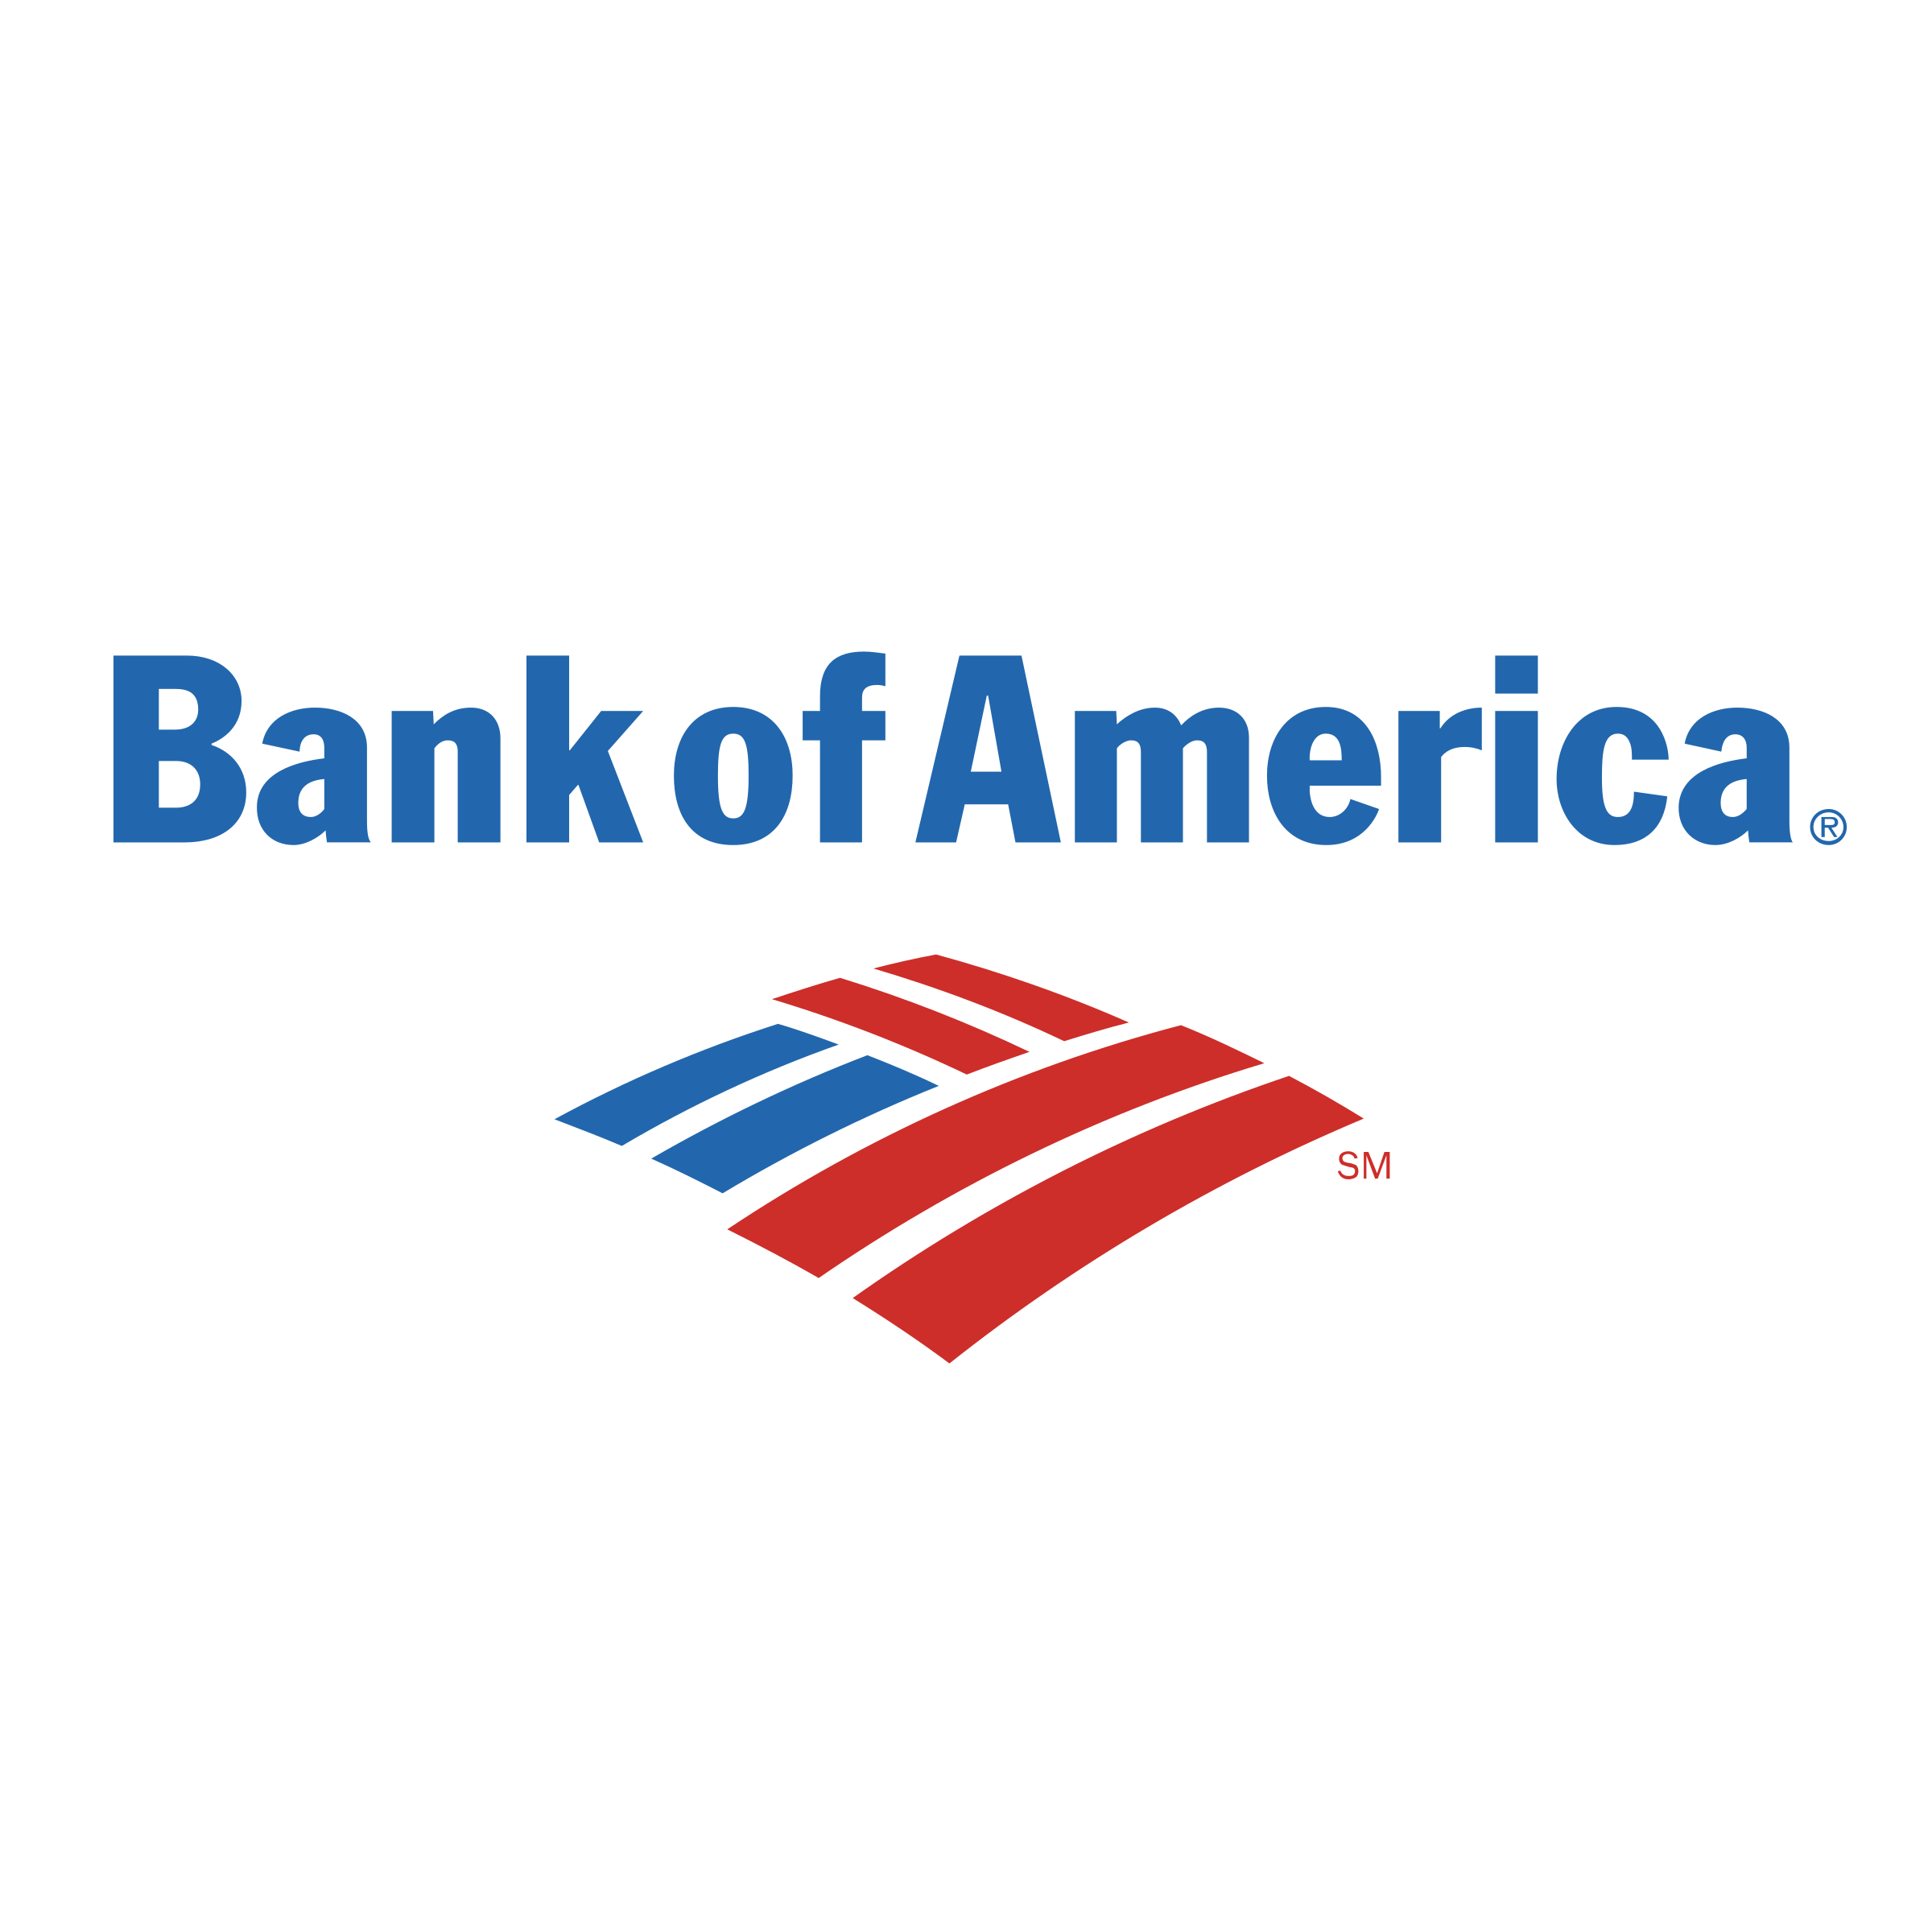 Банк Америки Bank of America. Логотипы американских банков. Банк оф Америка лого. Логотип банка банк оф Америка. Банки логотипы png